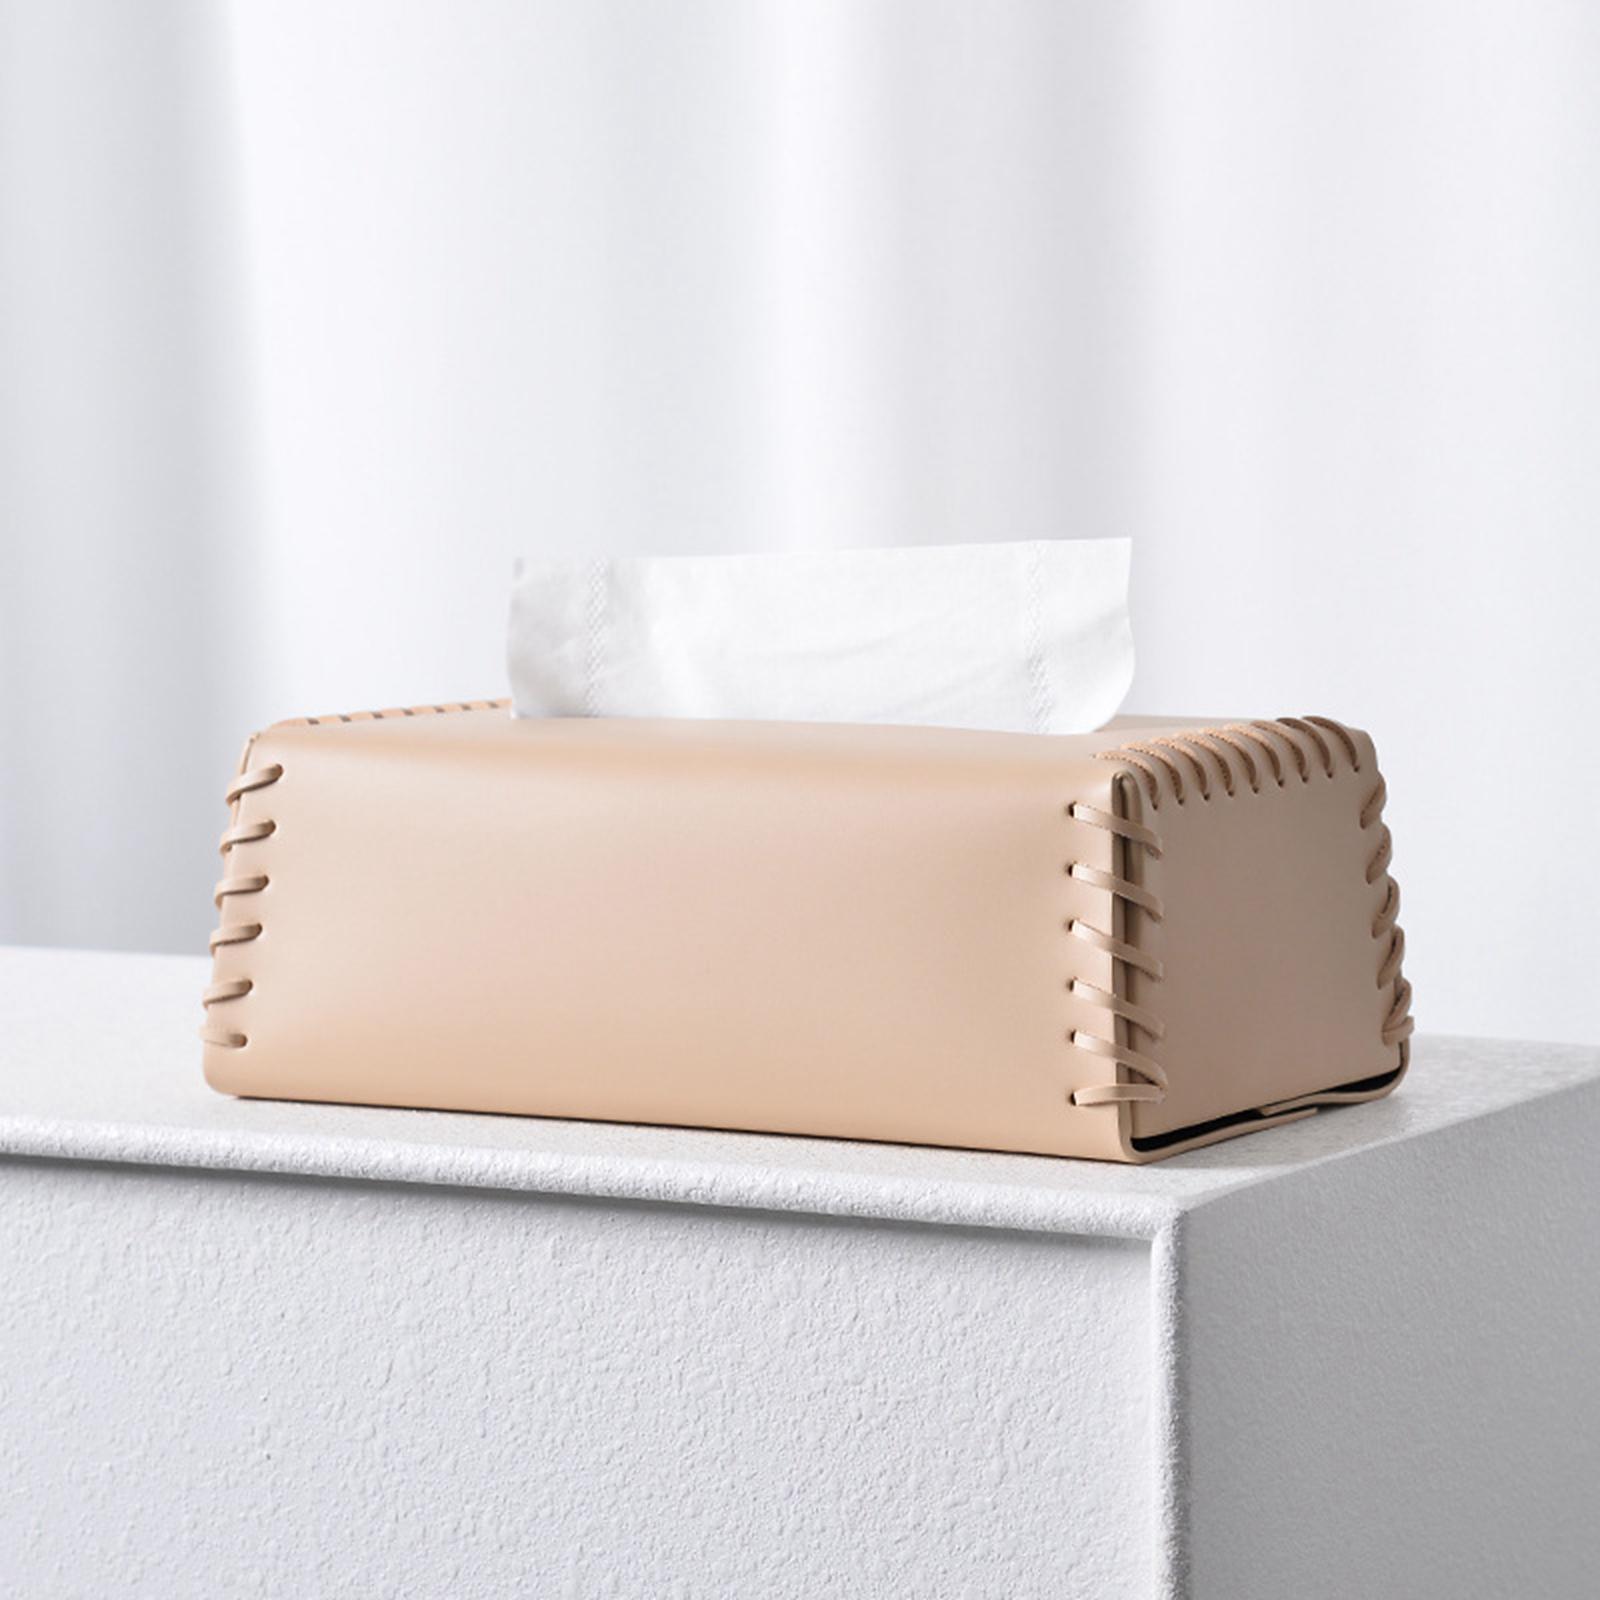 Tissue Dispenser Box Tissue Holder Tissue Case Tissue Paper Holder Bathroom Toilet Paper Holder Facial Tissue Holder for Bedroom Living Room